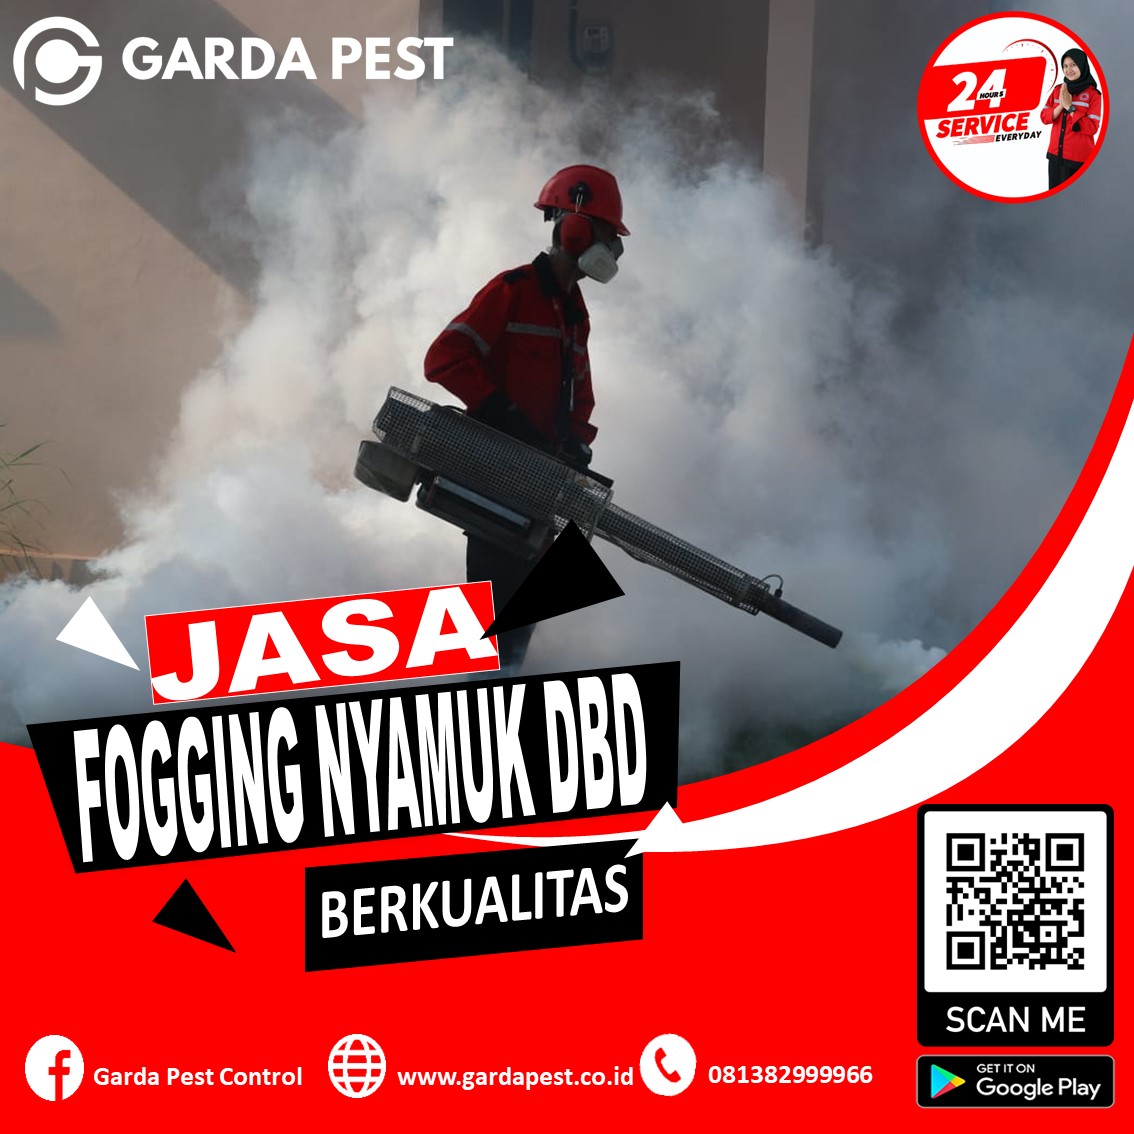 Jasa Fogging Nyamuk Cilegon Banten